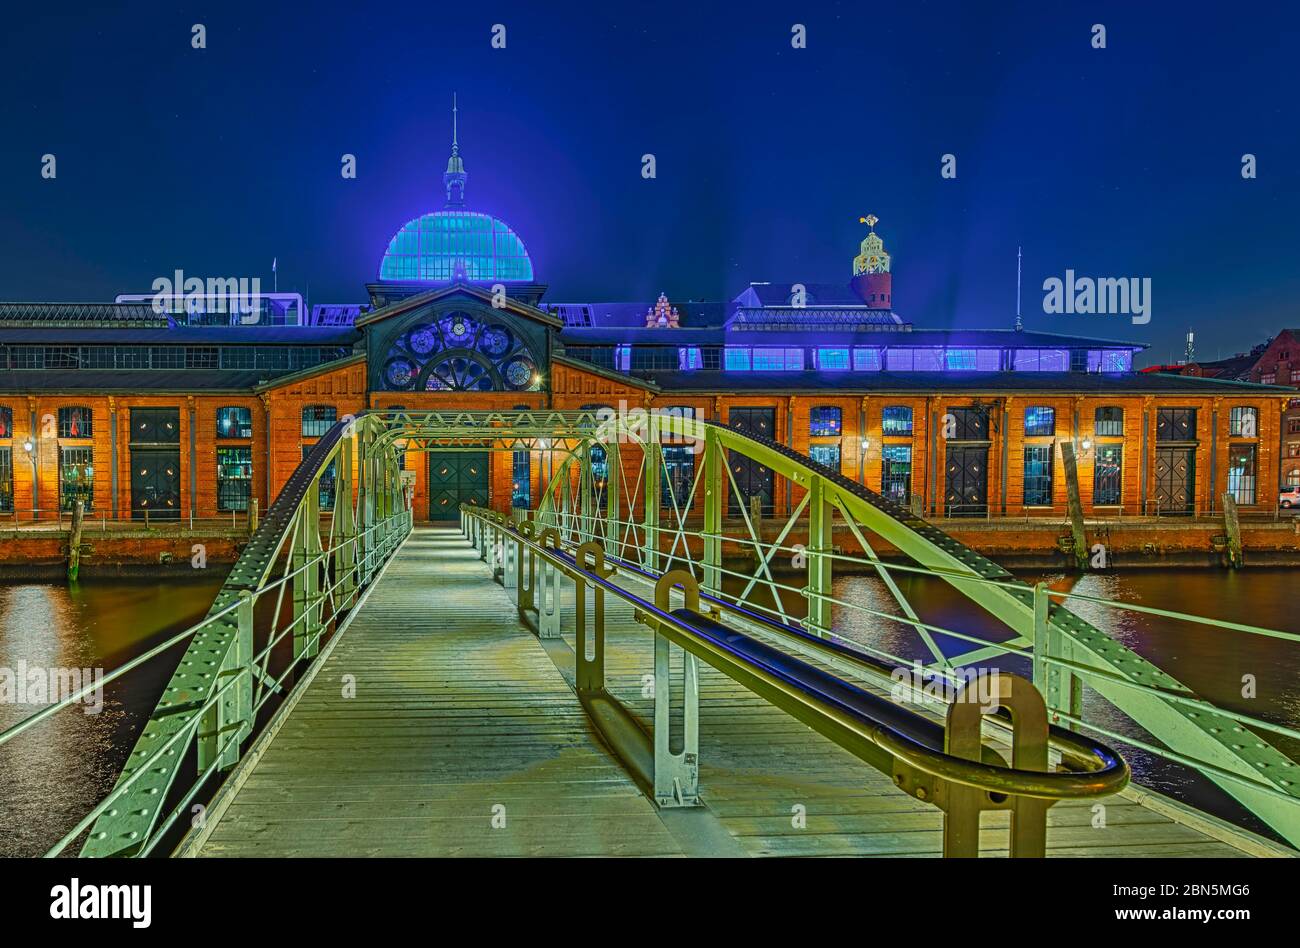 Brücke über die Elbe, Veranstaltungszentrum, ehemalige Fischauktionshalle, beleuchtet, Nachtaufnahme, Altona, Hamburg, Deutschland Stockfoto